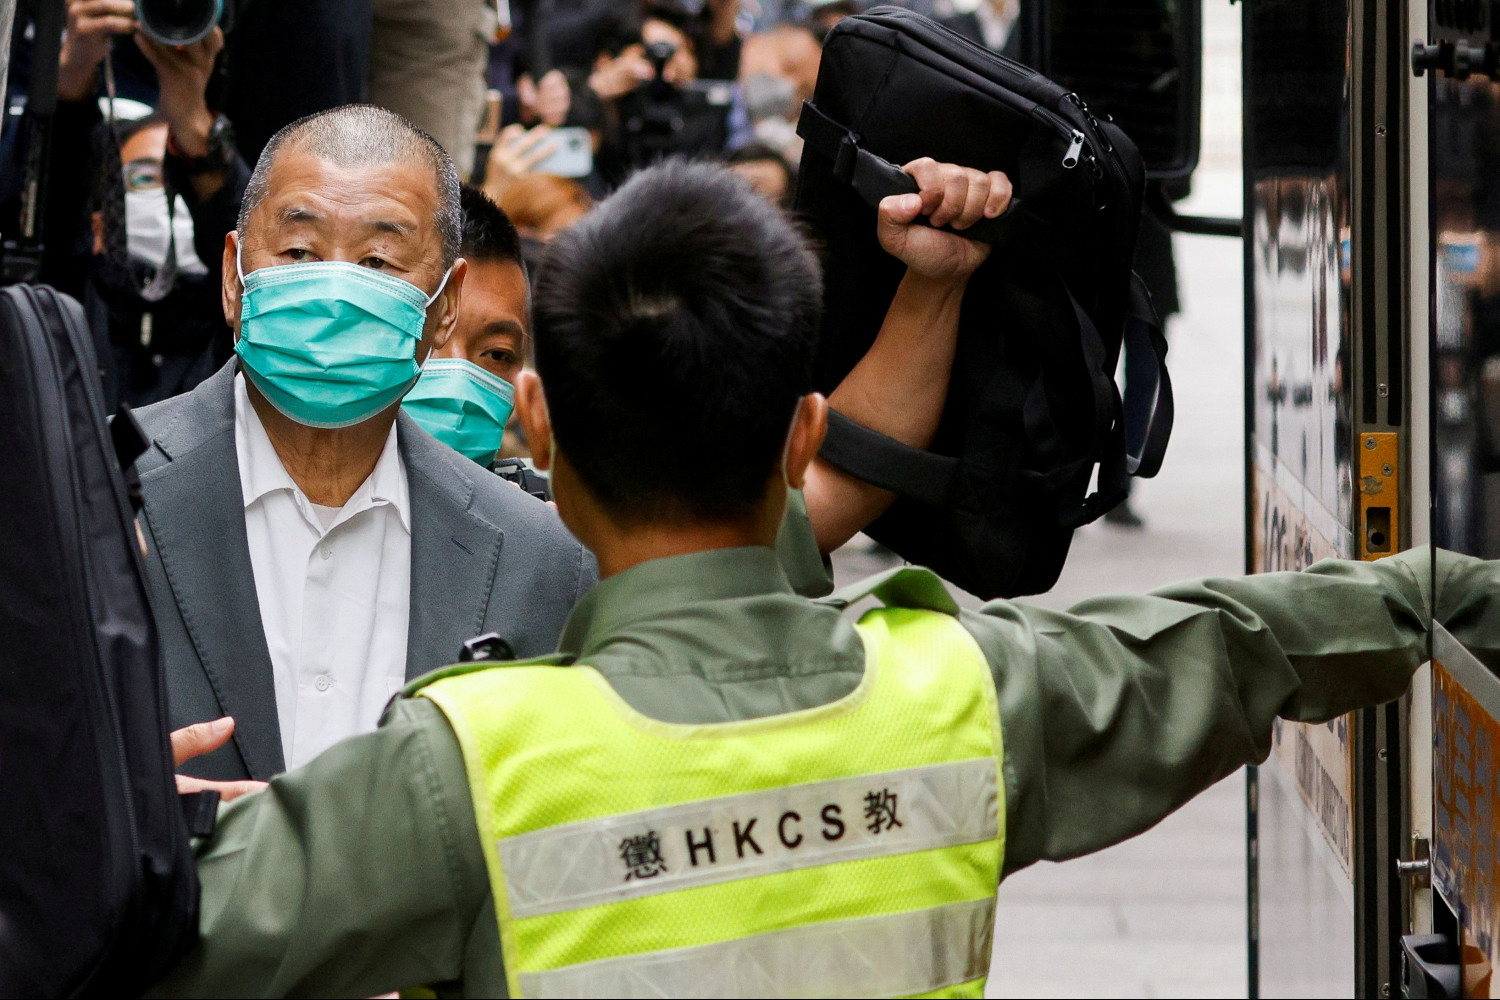 https://img3.s3wfg.com/web/img/images_uploaded/c/7/hong-kong-les-banquiers-de-jimmy-lai-menaces-de-prison-s-ils-s-occupent-de-ses-comptes_rsz.jpg